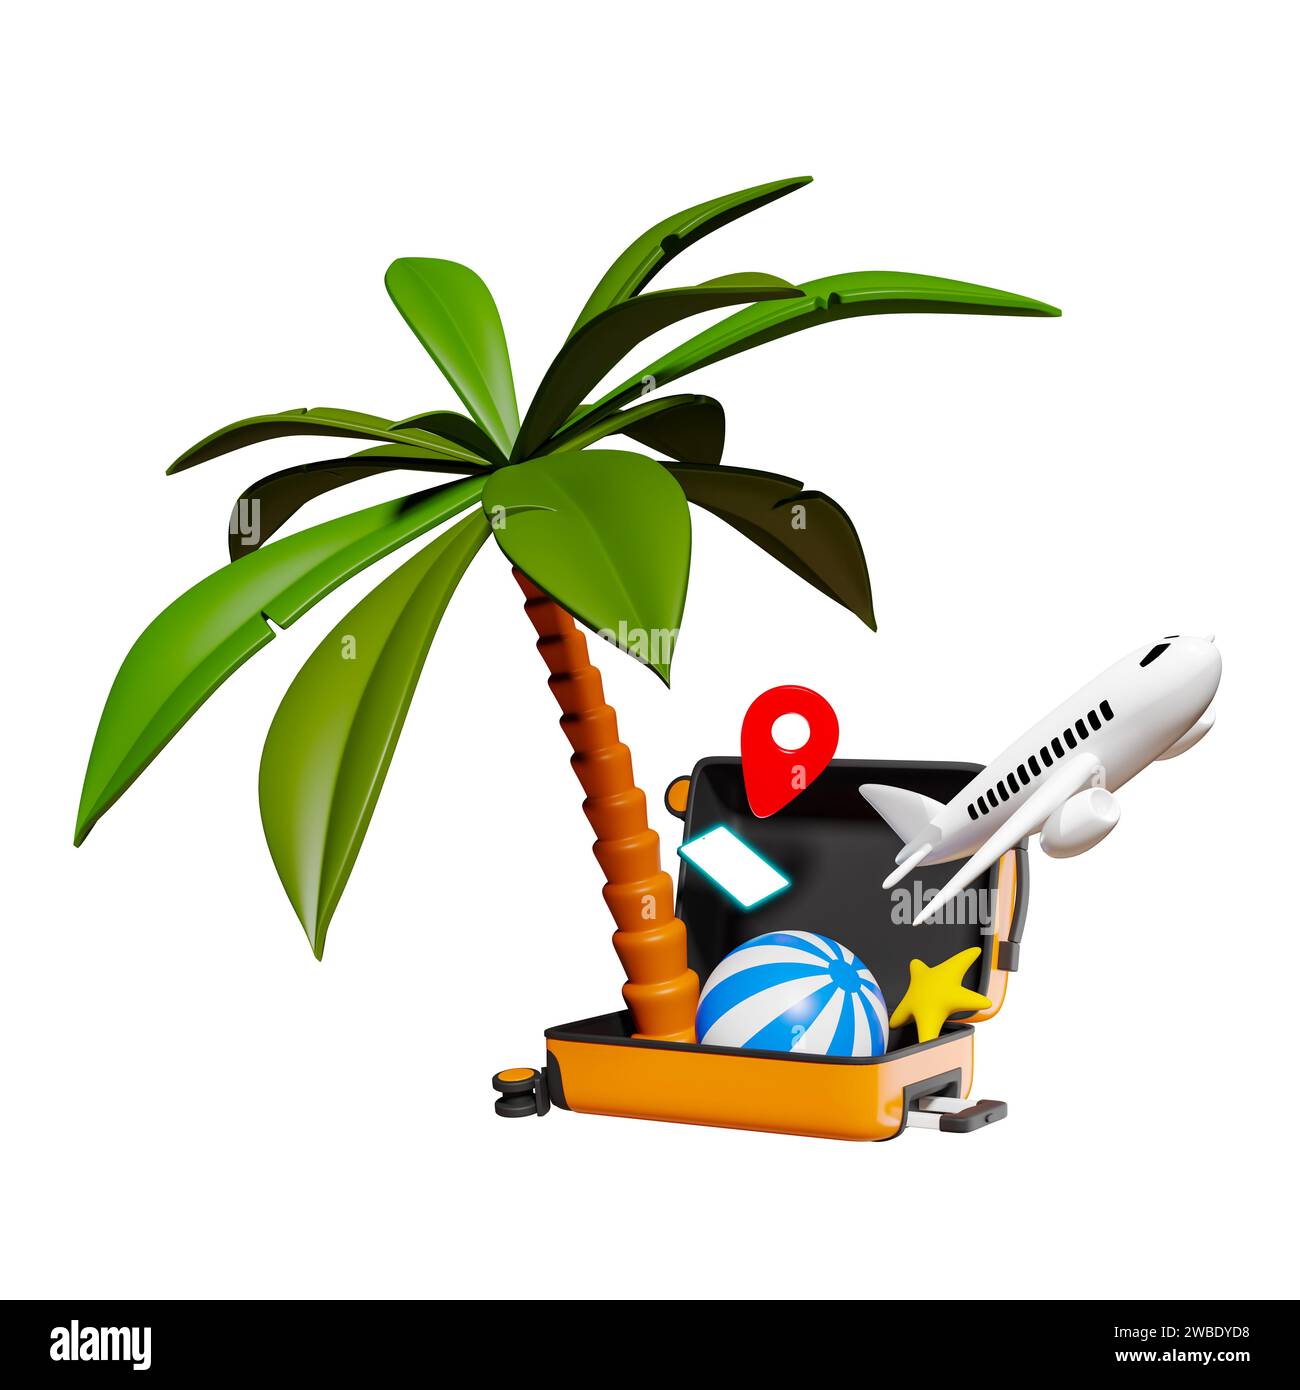 Palmera, pelota de playa, estrellas de mar, avión, teléfono inteligente y un pin de mapa saltando de la maleta abierta aislada. renderizado 3d. Foto de stock